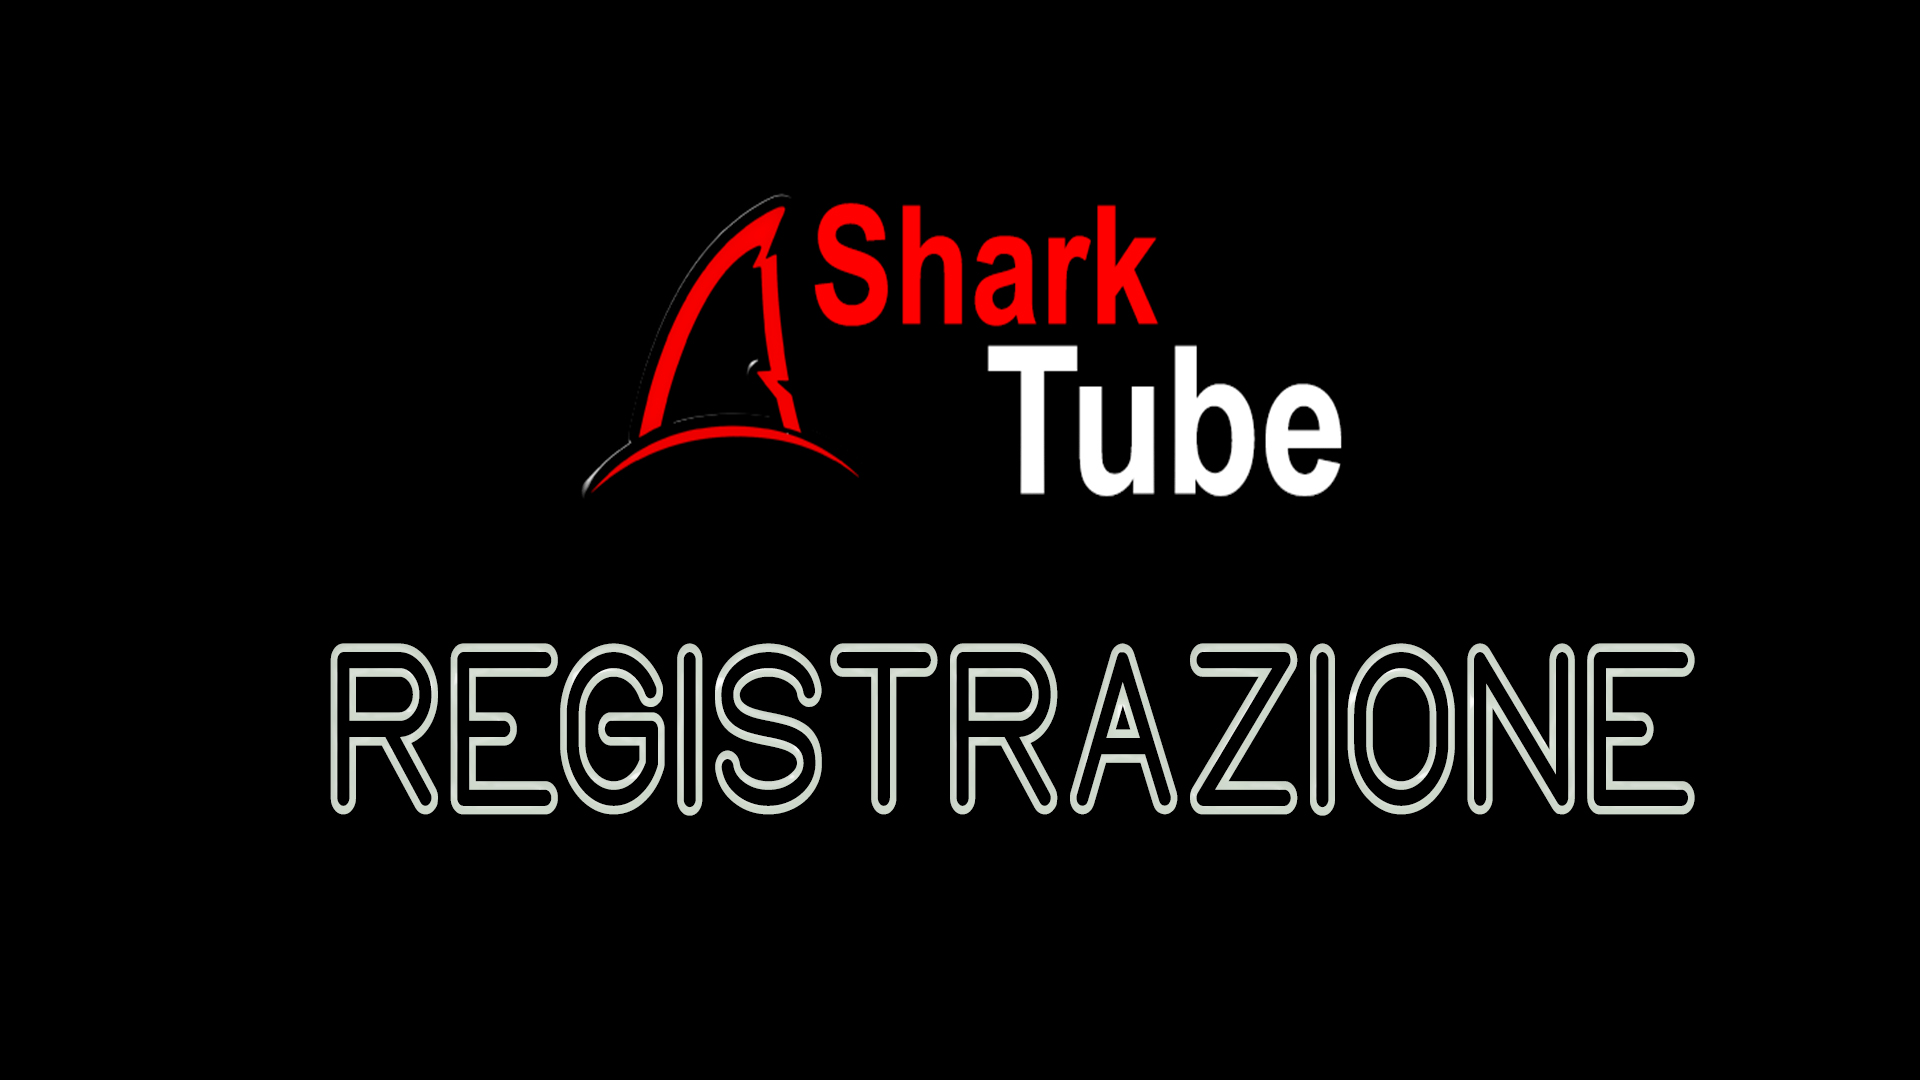 Registrazione Shark Tube...